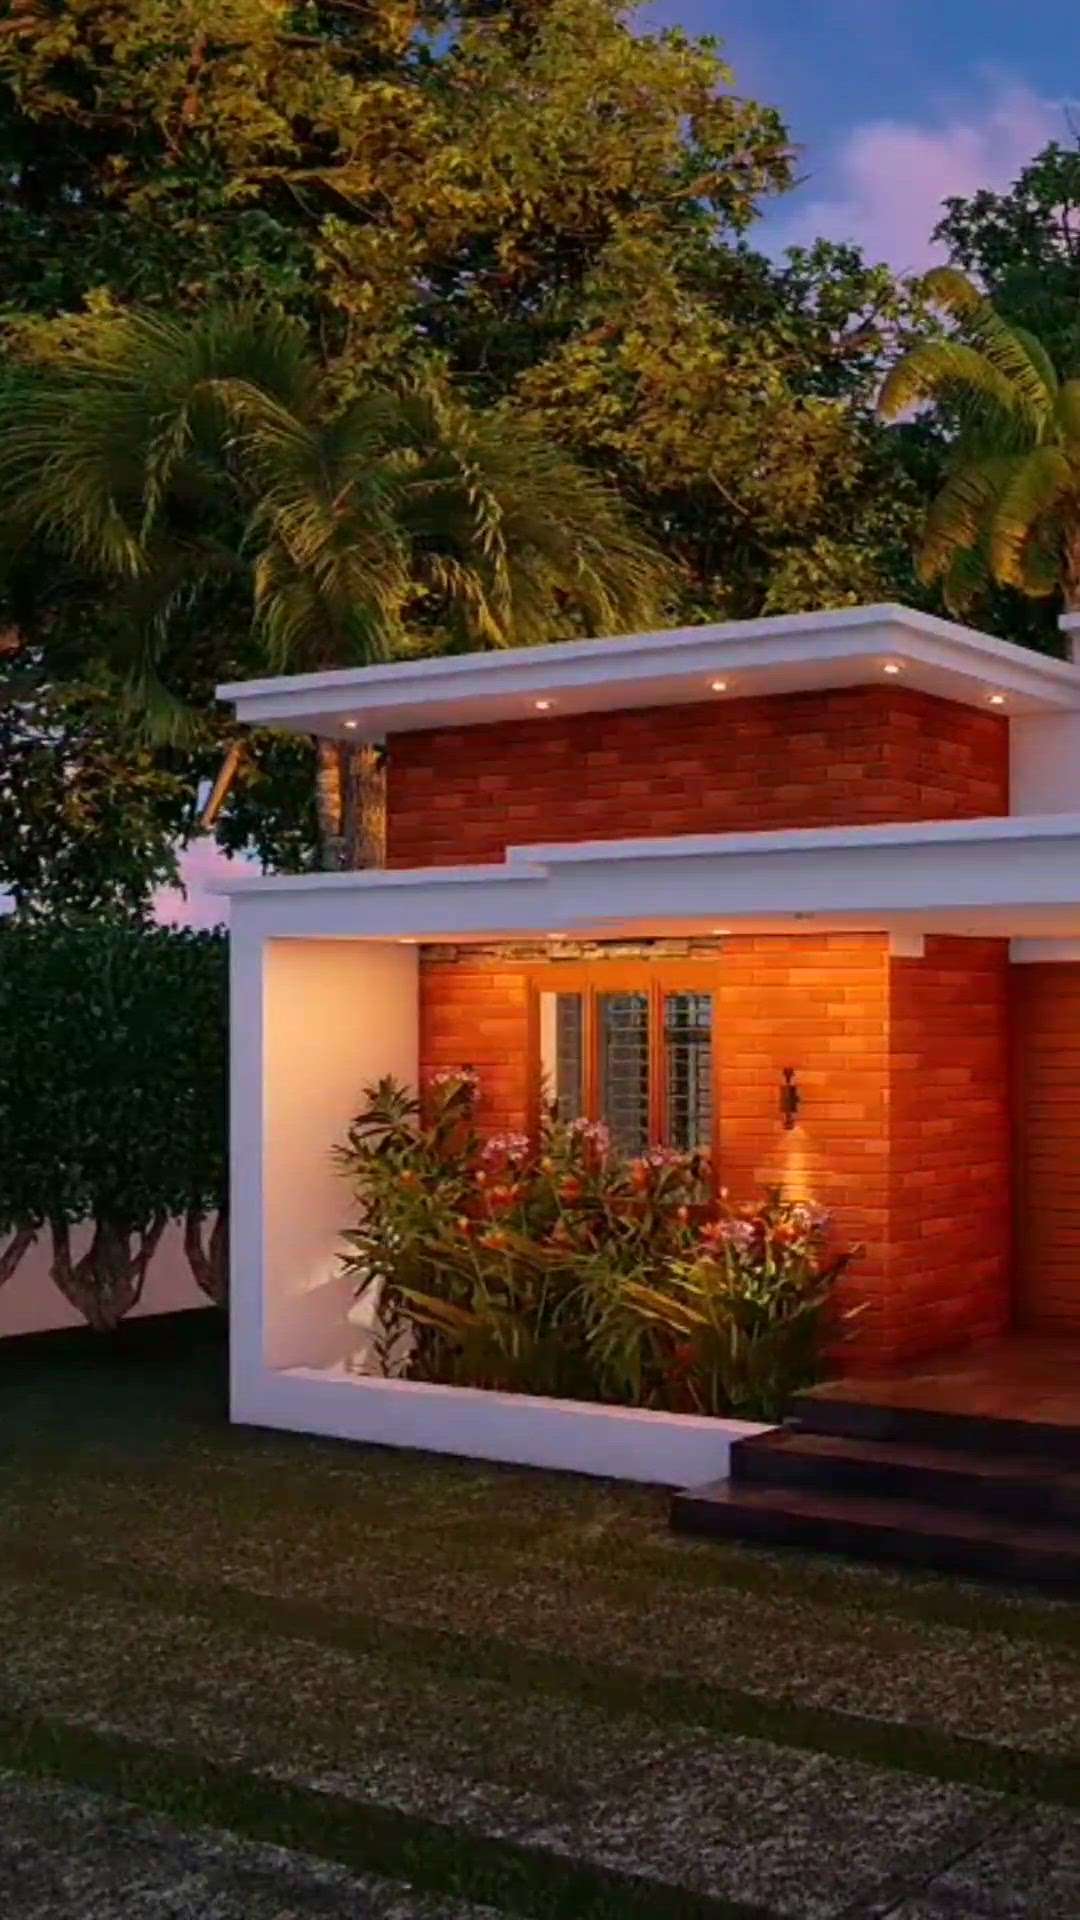 ഇഷ്ടപെട്ടാൽ like ചെയ്യണേ 👍👍
simple ❤️cute home design
for Mrs.Rajani @pkd..
single floor 2bhk 
. #HomeAutomation  #SingleFloorHouse  #Simplestyle  #koloviral  #2BHKHouse  #FloorPlans  #ContemporaryHouse  #HouseDesigns  #modernhome  #foryourpage  #viralposts  #keralaarchitectures  #keralastyle  #Architect  #3Darchitecture  #best3ddesinger  #3delevation🏠